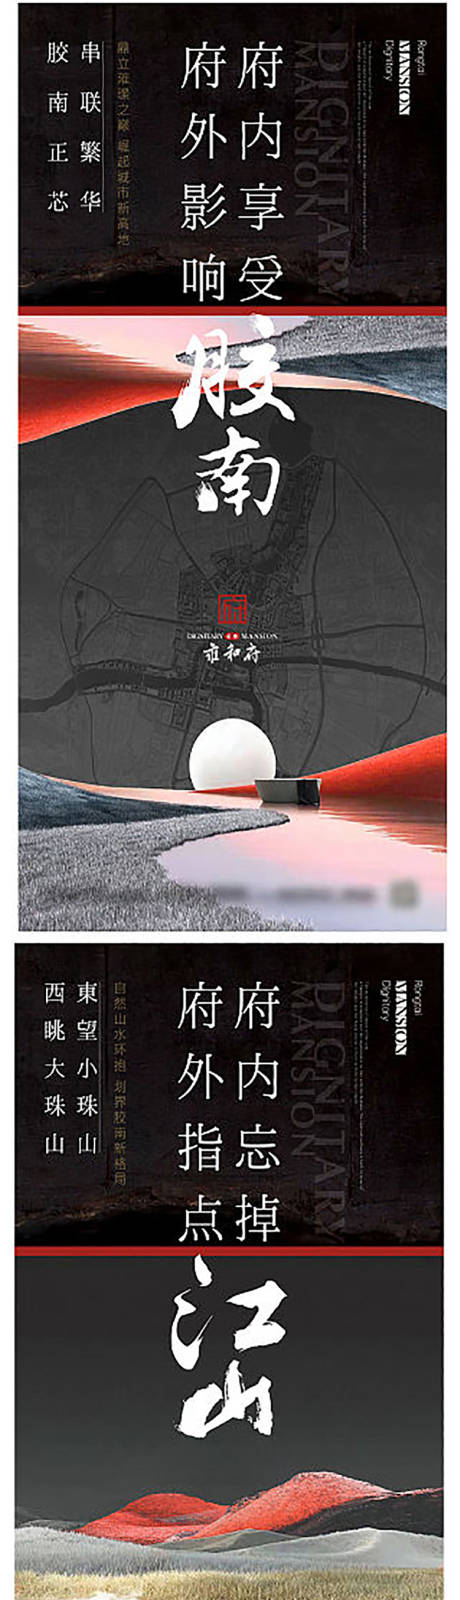 中式价值点系列海报